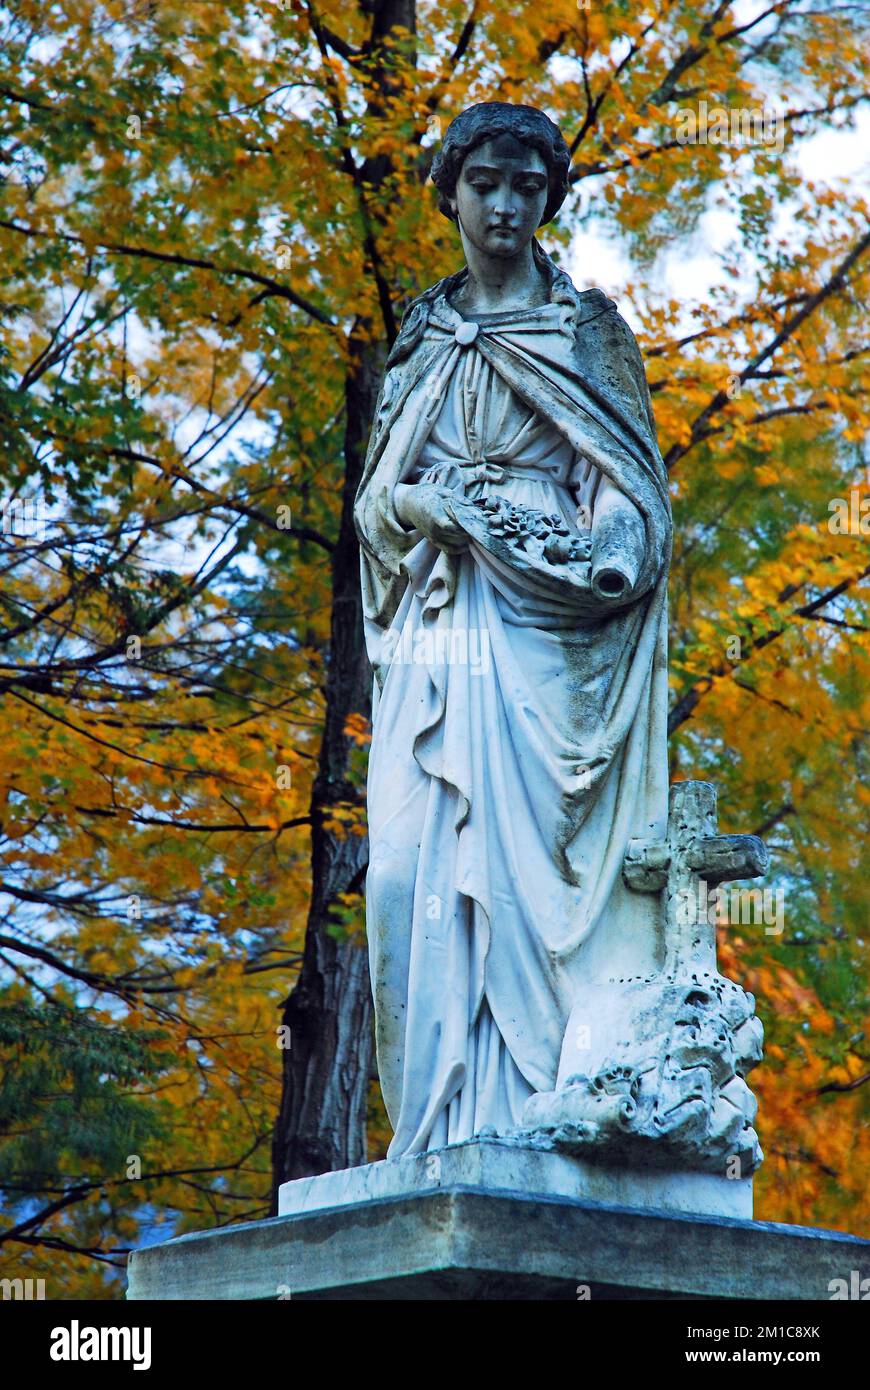 Une statue en marbre est encadrée de feuillage d'automne dans un cimetière du Vermont Banque D'Images